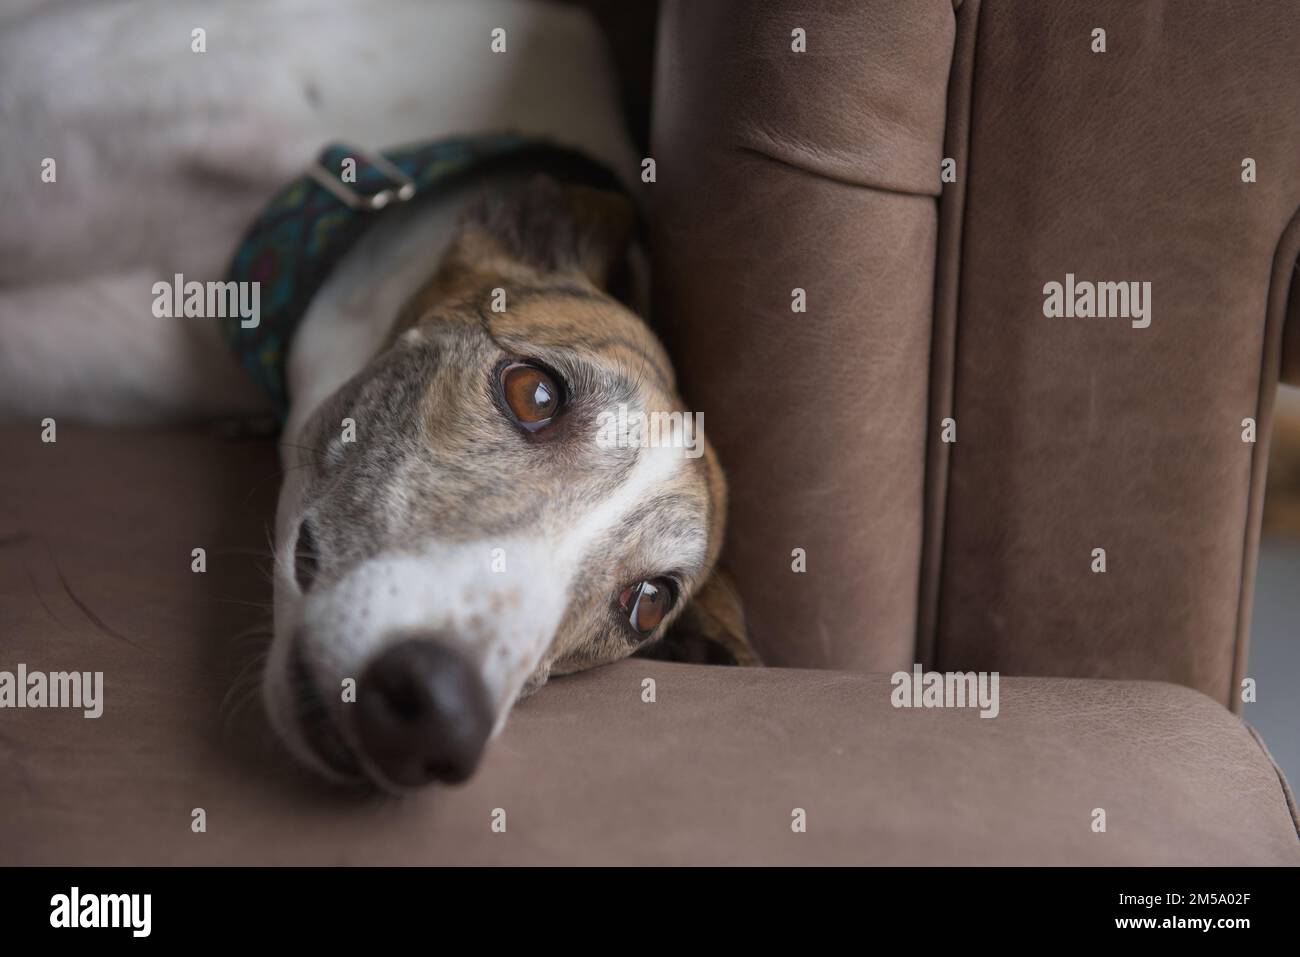 Gros plan sur le visage d'un chien greyhound, reposant, allongé sur le côté d'un canapé en cuir marron, en regardant vers une grande fenêtre. Copier l'espace à droite. Banque D'Images